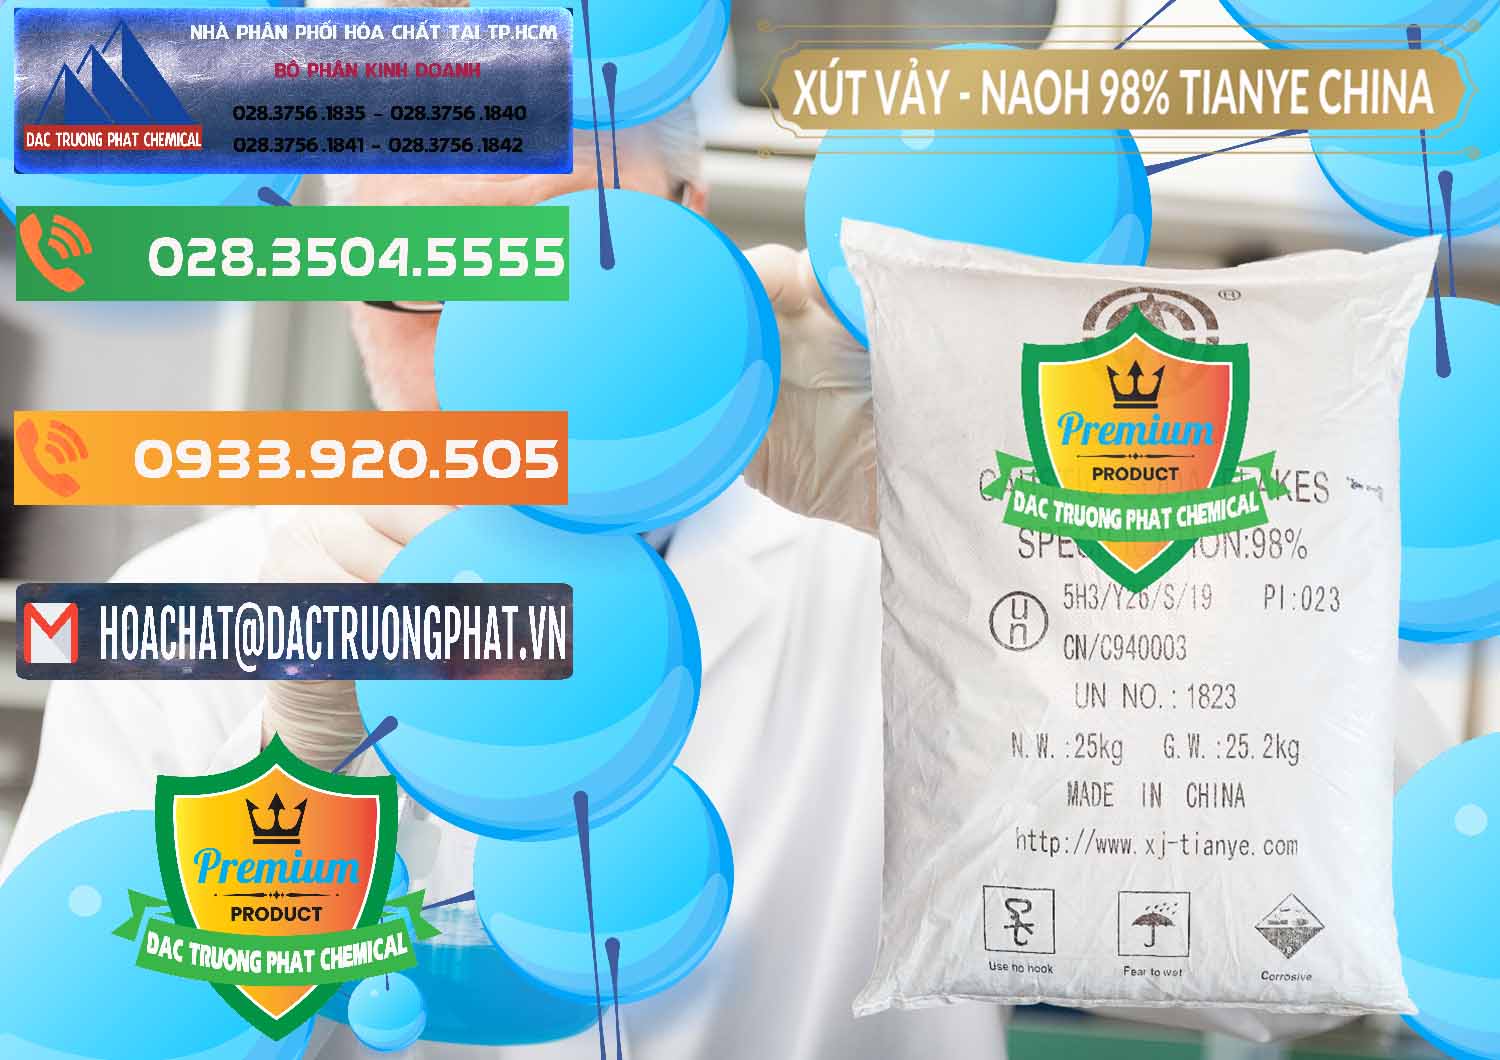 Cty chuyên bán - cung cấp Xút Vảy - NaOH Vảy 98% Tianye Trung Quốc China - 0177 - Kinh doanh _ cung cấp hóa chất tại TP.HCM - hoachatxulynuoc.com.vn